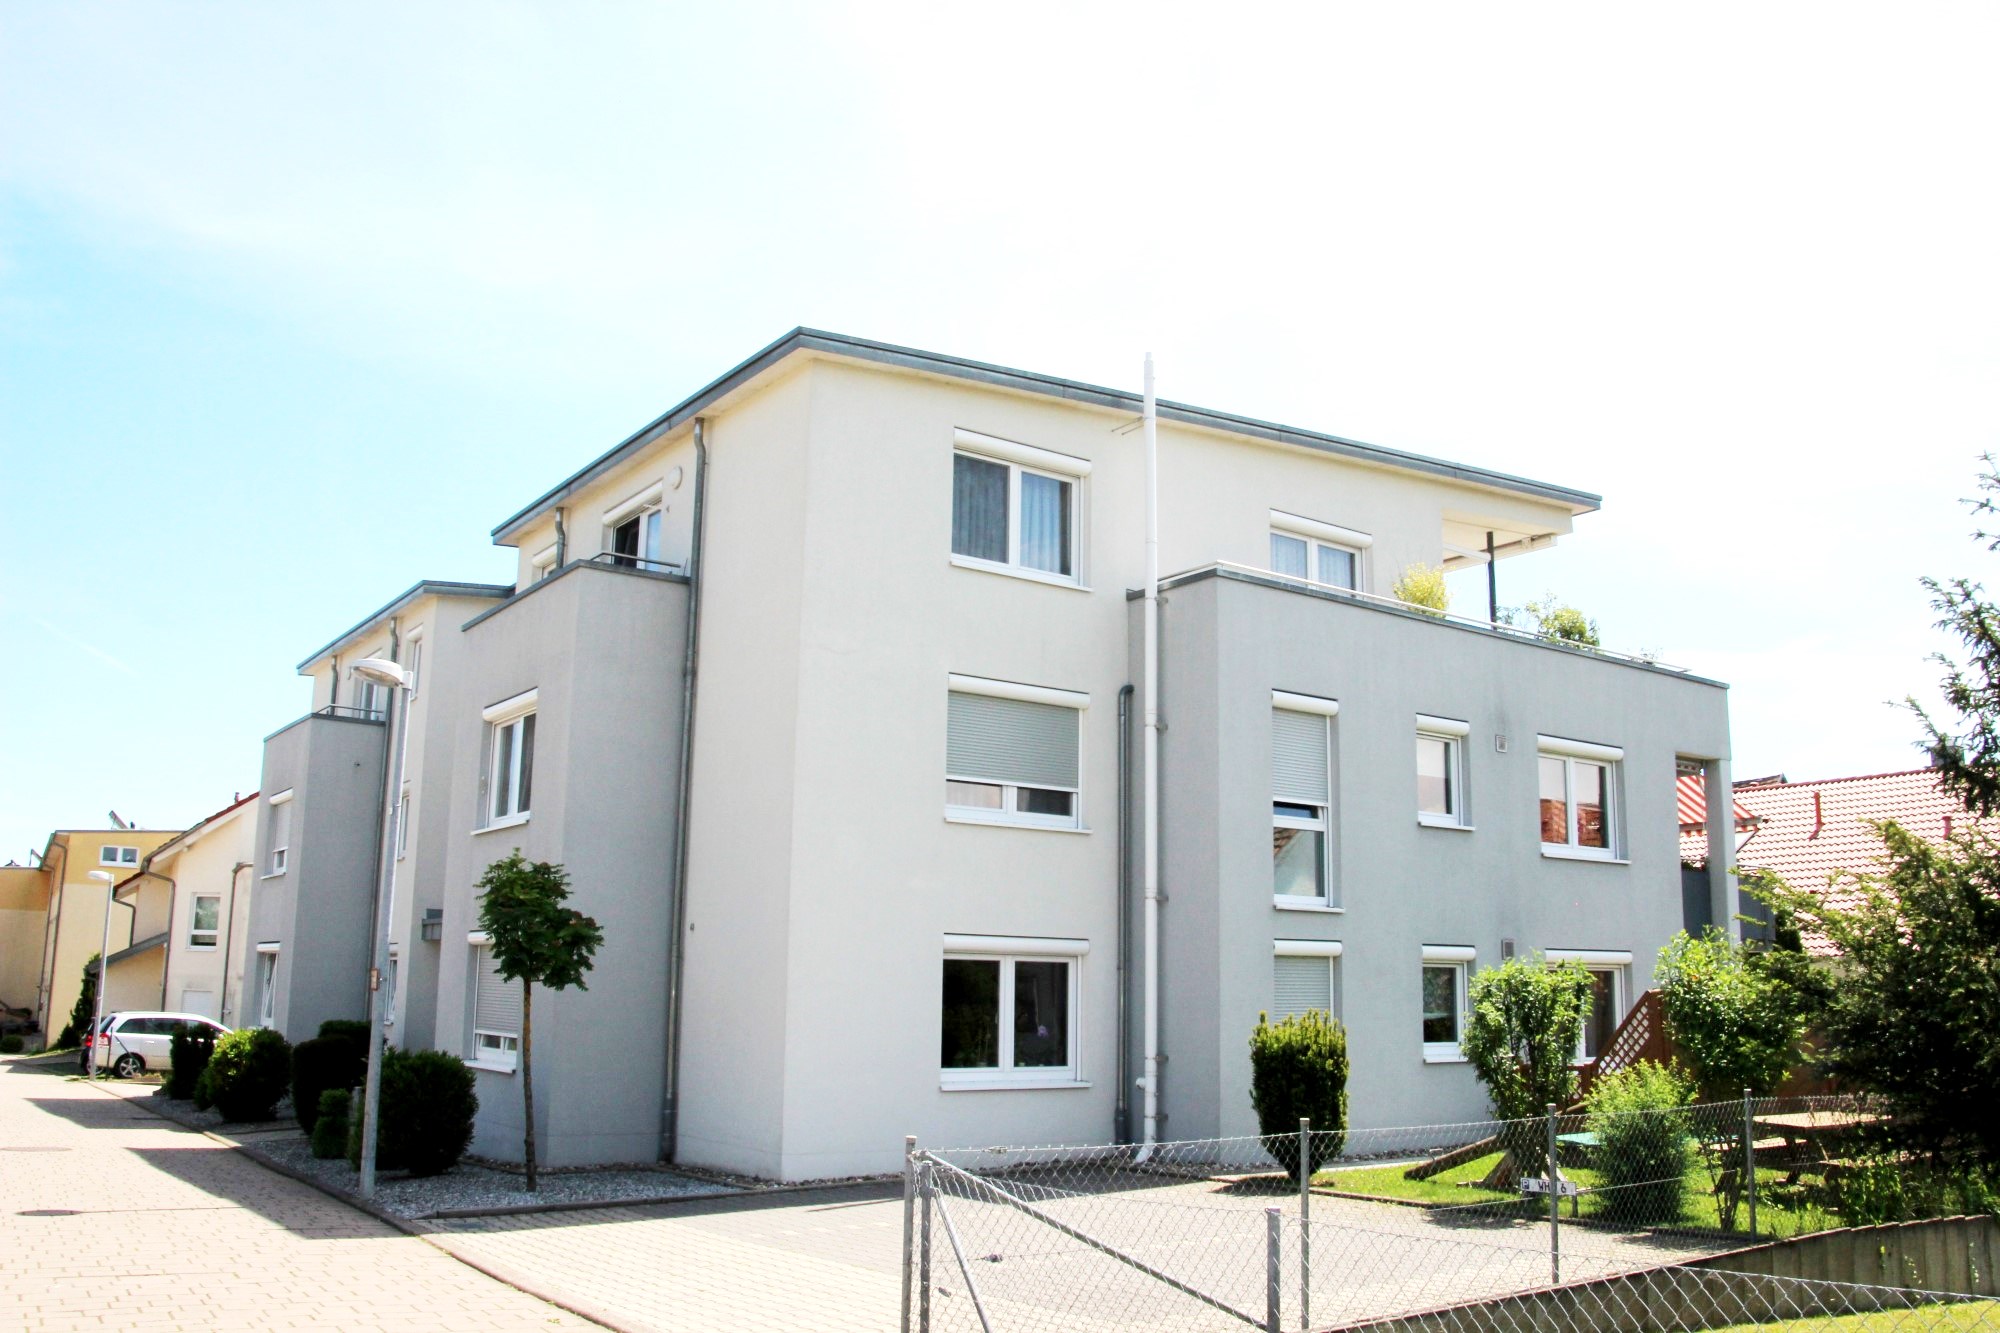 2009 | 9-Familienhaus Tannenweg in Sindelfingen-Maichingen, Architekt Dipl. Ing. U. Gehrer